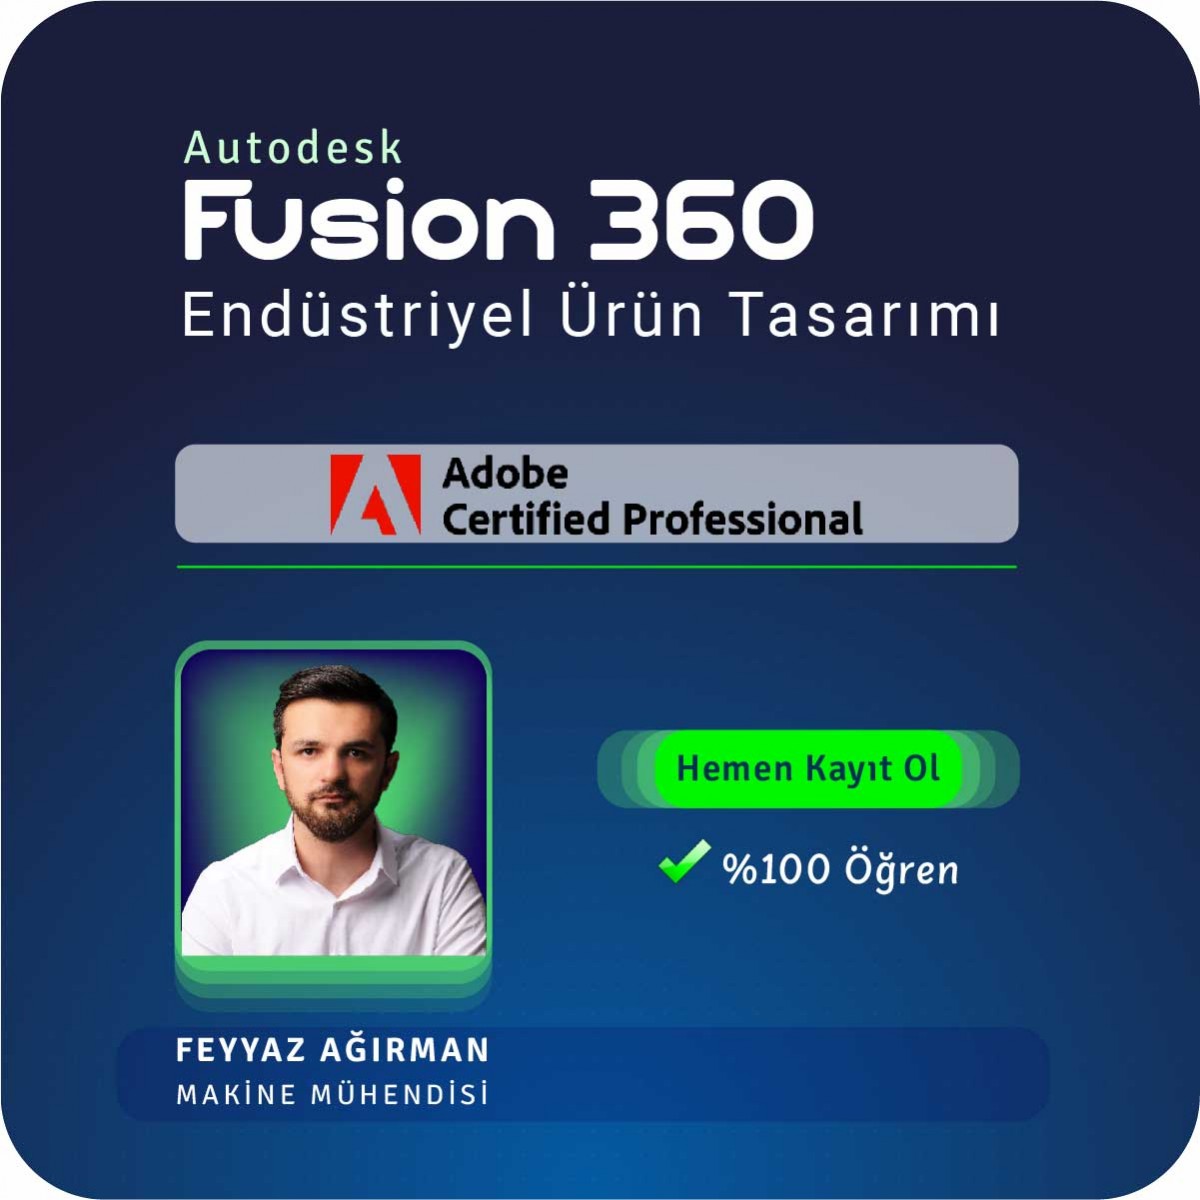 Autodesk Fusion 360 Endüstriyel Ürün Tasarımı Yüz Yüze Eğitimi